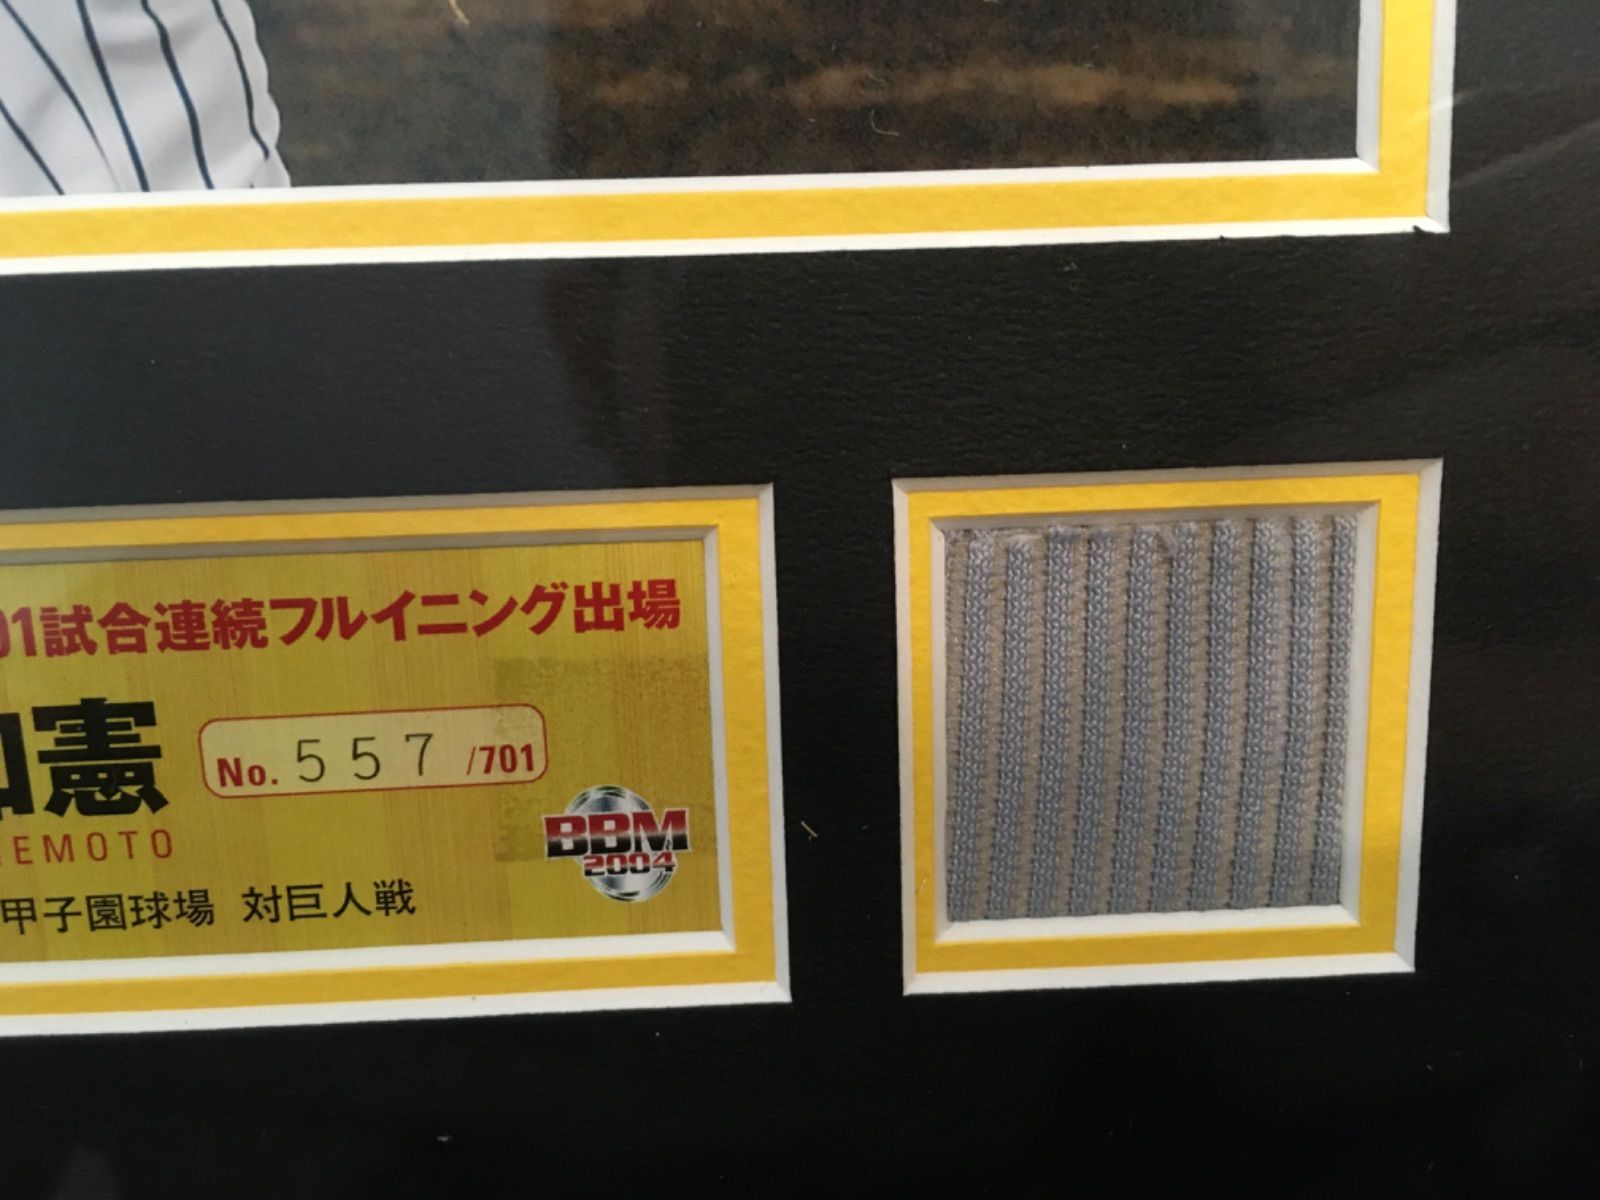 阪神タイガース 金本知憲 701試合フルイニング出場 記念パネル - メルカリ